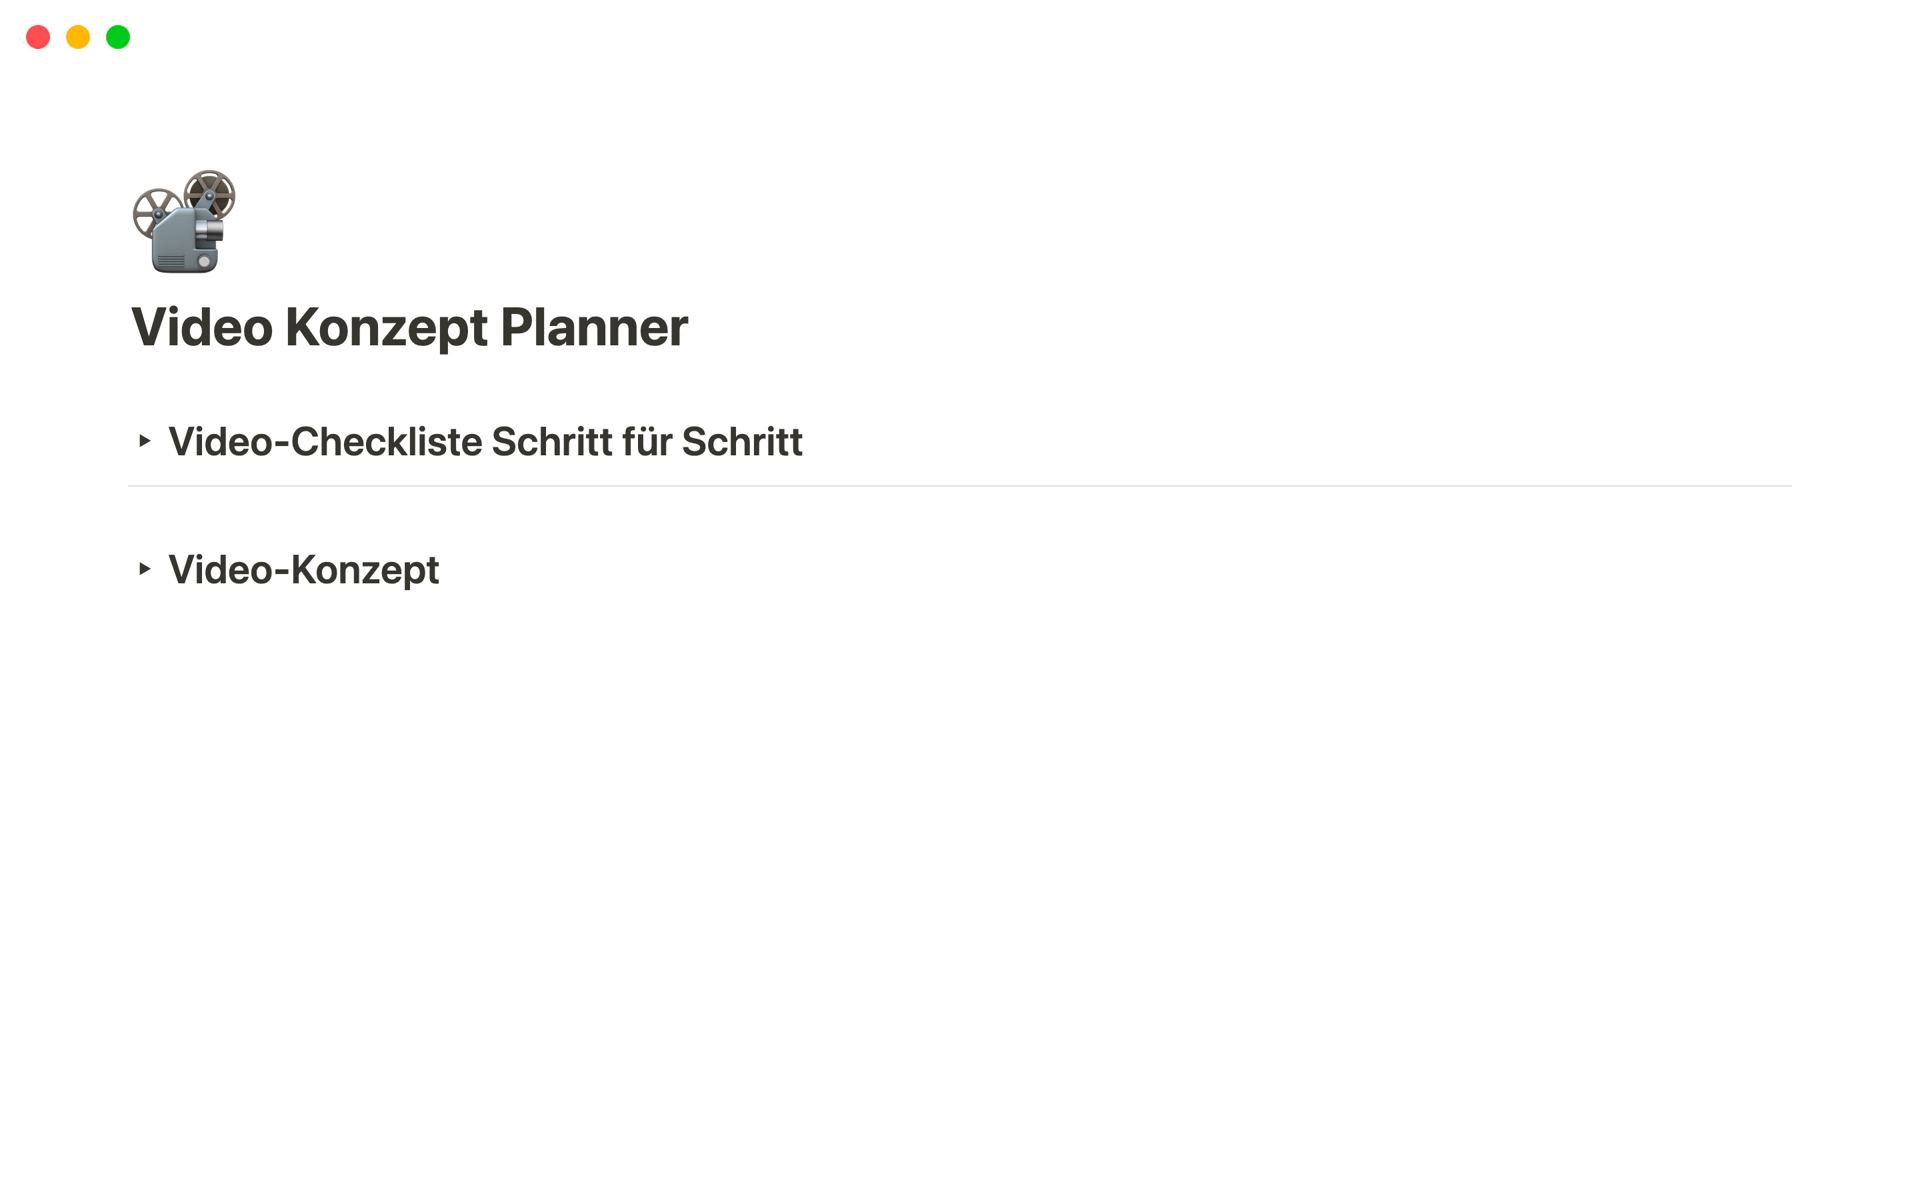 Vista previa de una plantilla para Video Konzept Planner